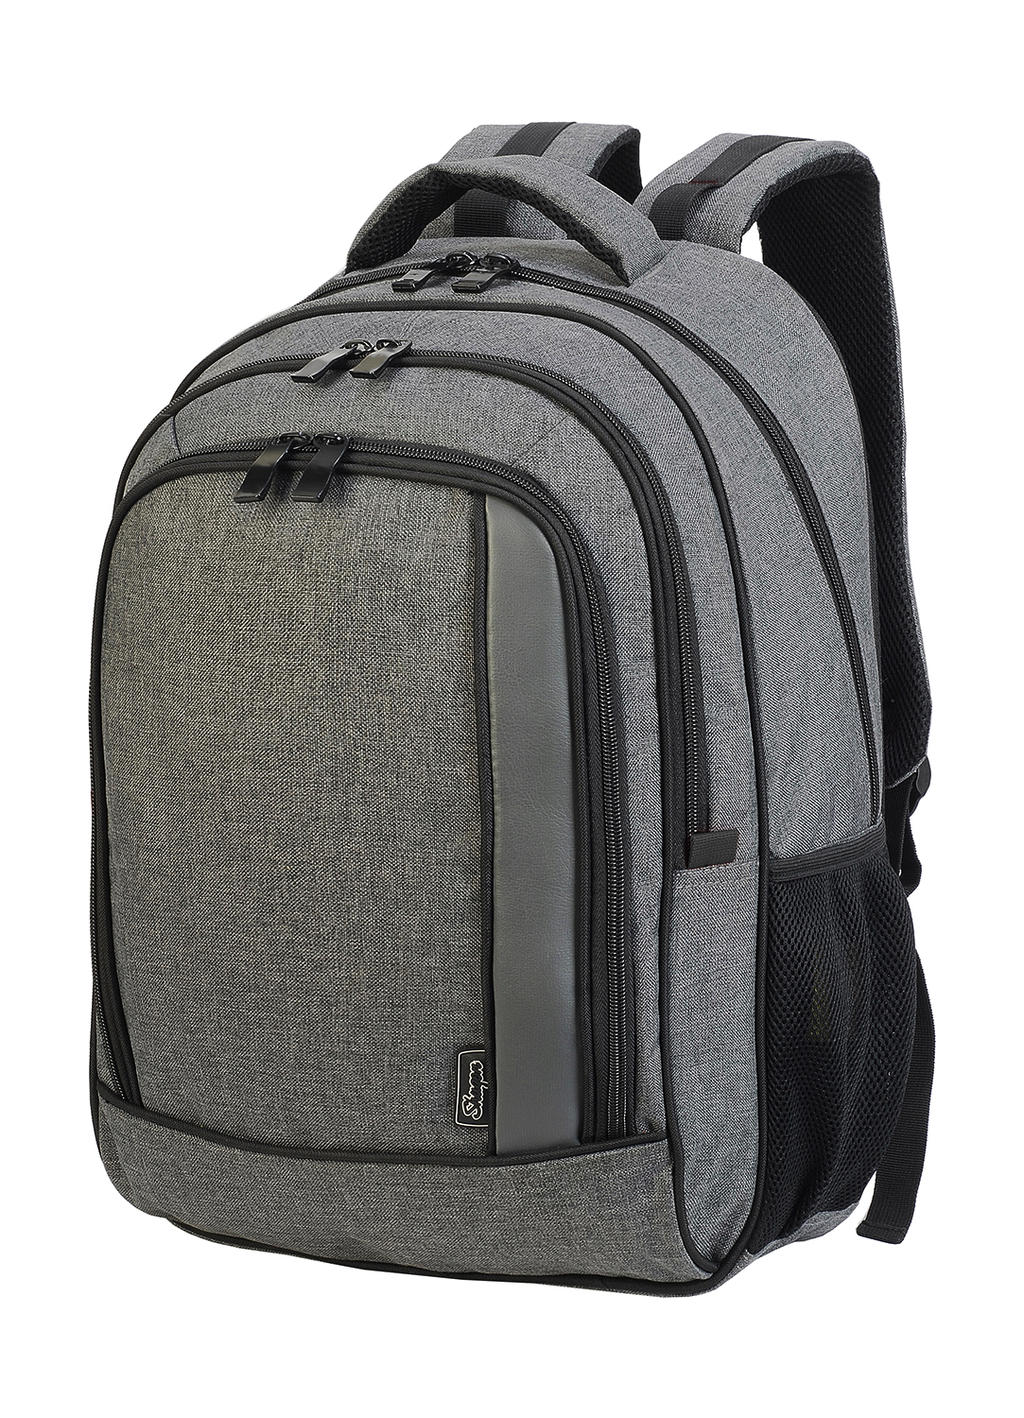  Frankfurt Smart Laptop Backpack in Farbe Grey Melange/Black